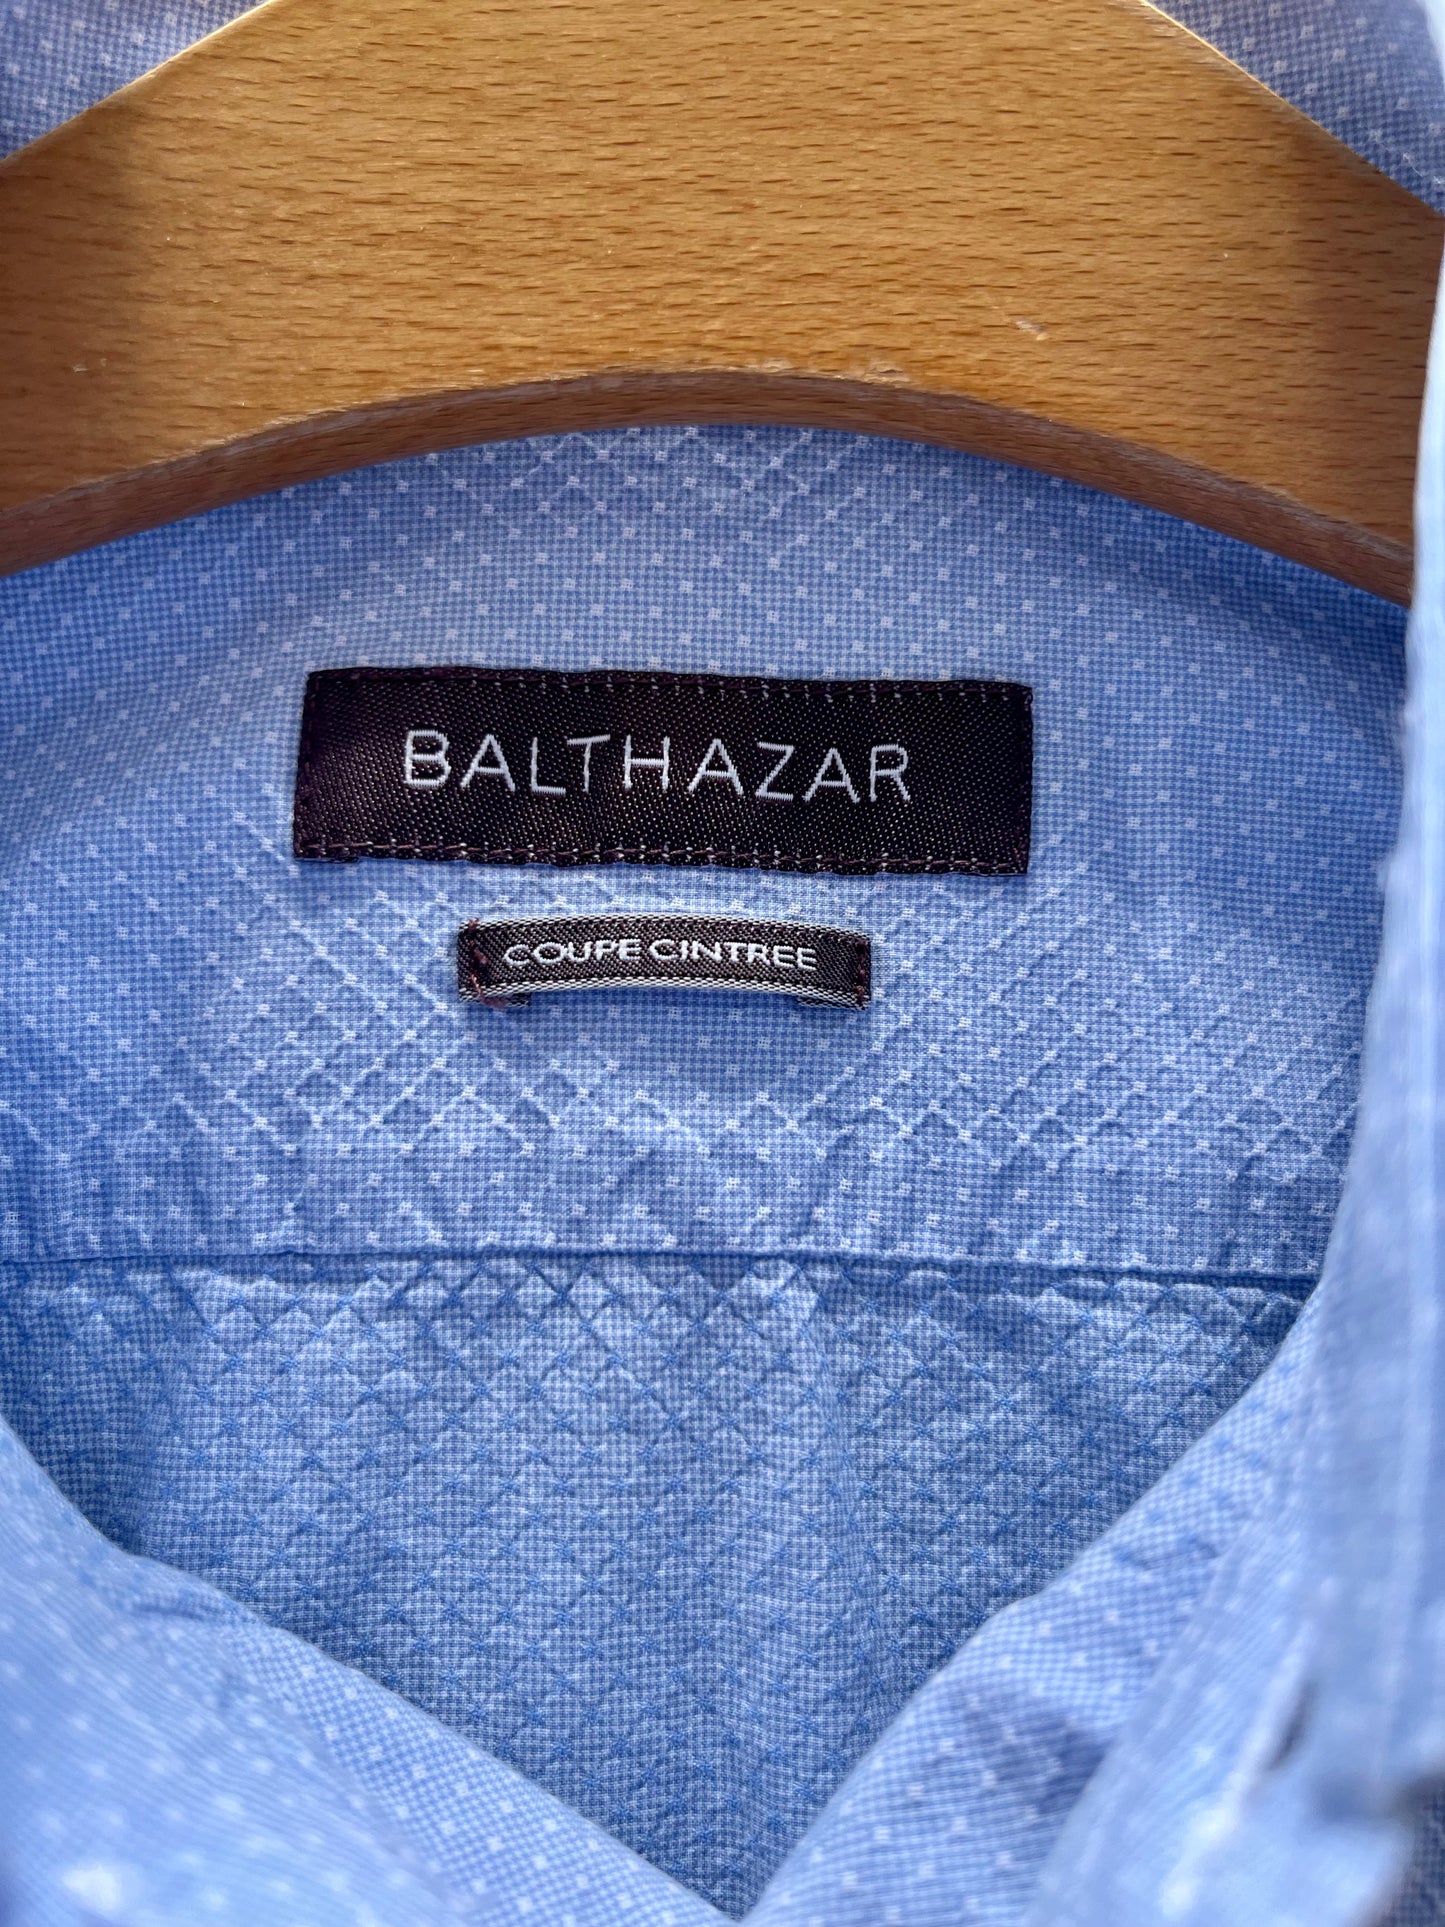 La chemise bleue à pois,  BALTHAZAR, taille S